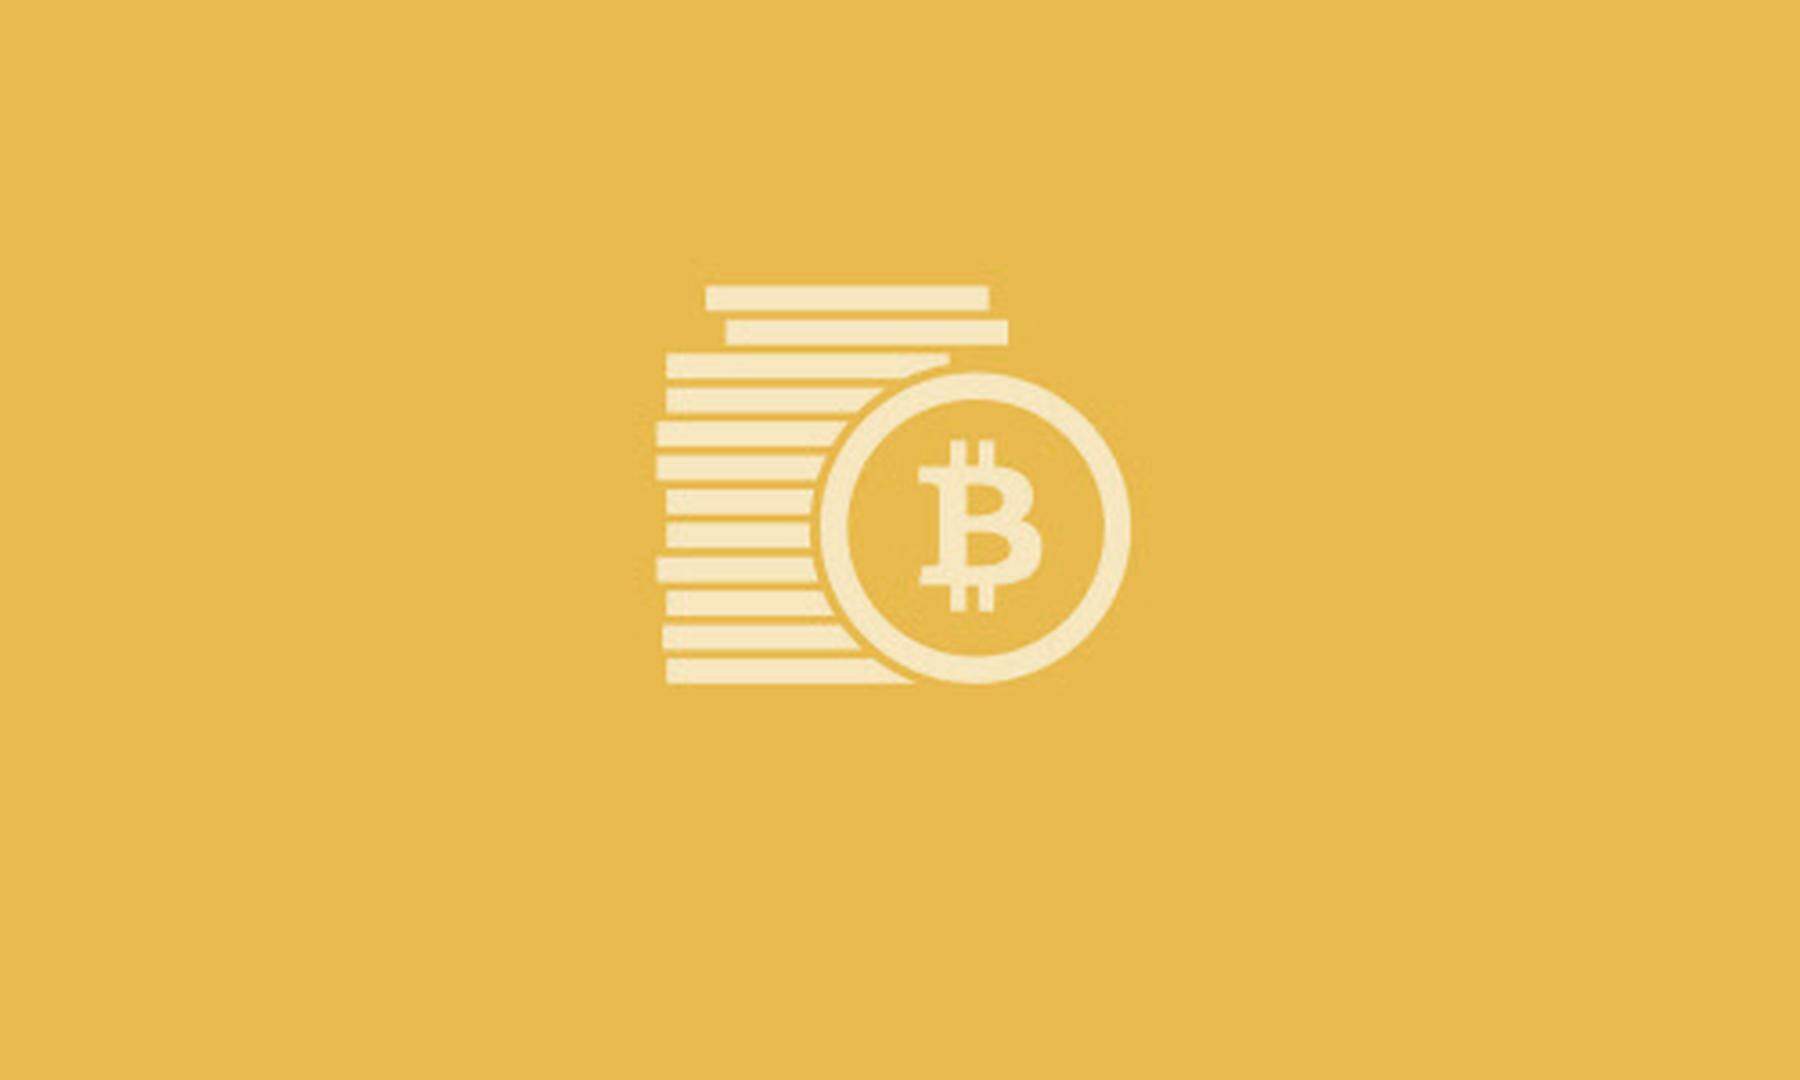 ist bitcoin nicht doch ein ponzi-system?